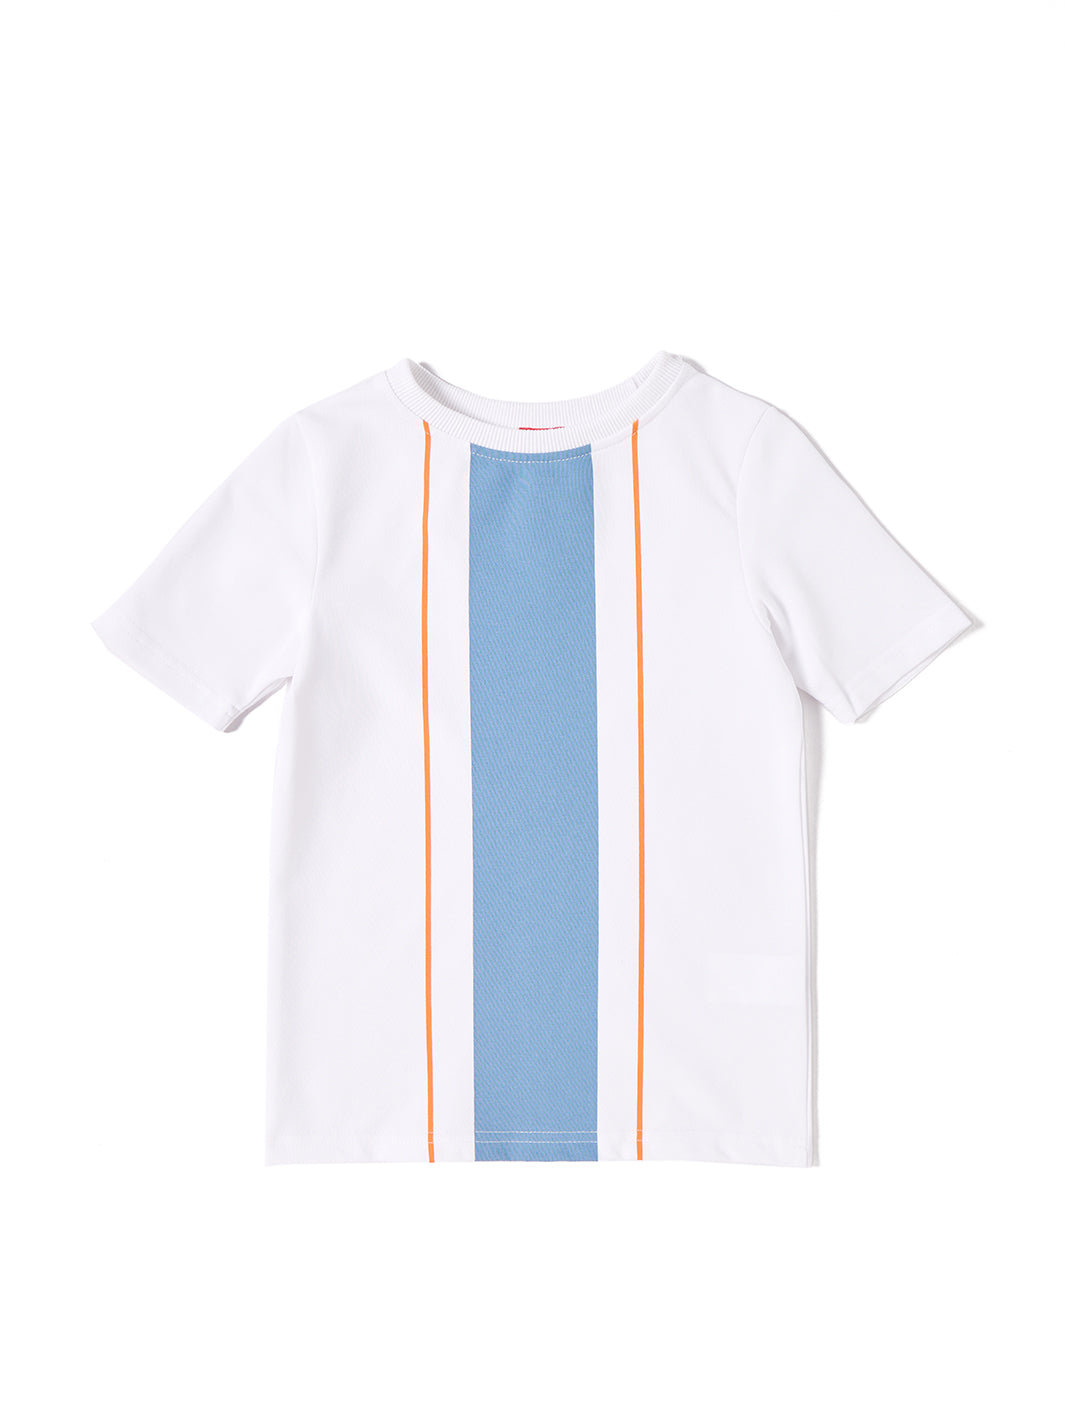 Stripe Print Short Sleeve T-shirt